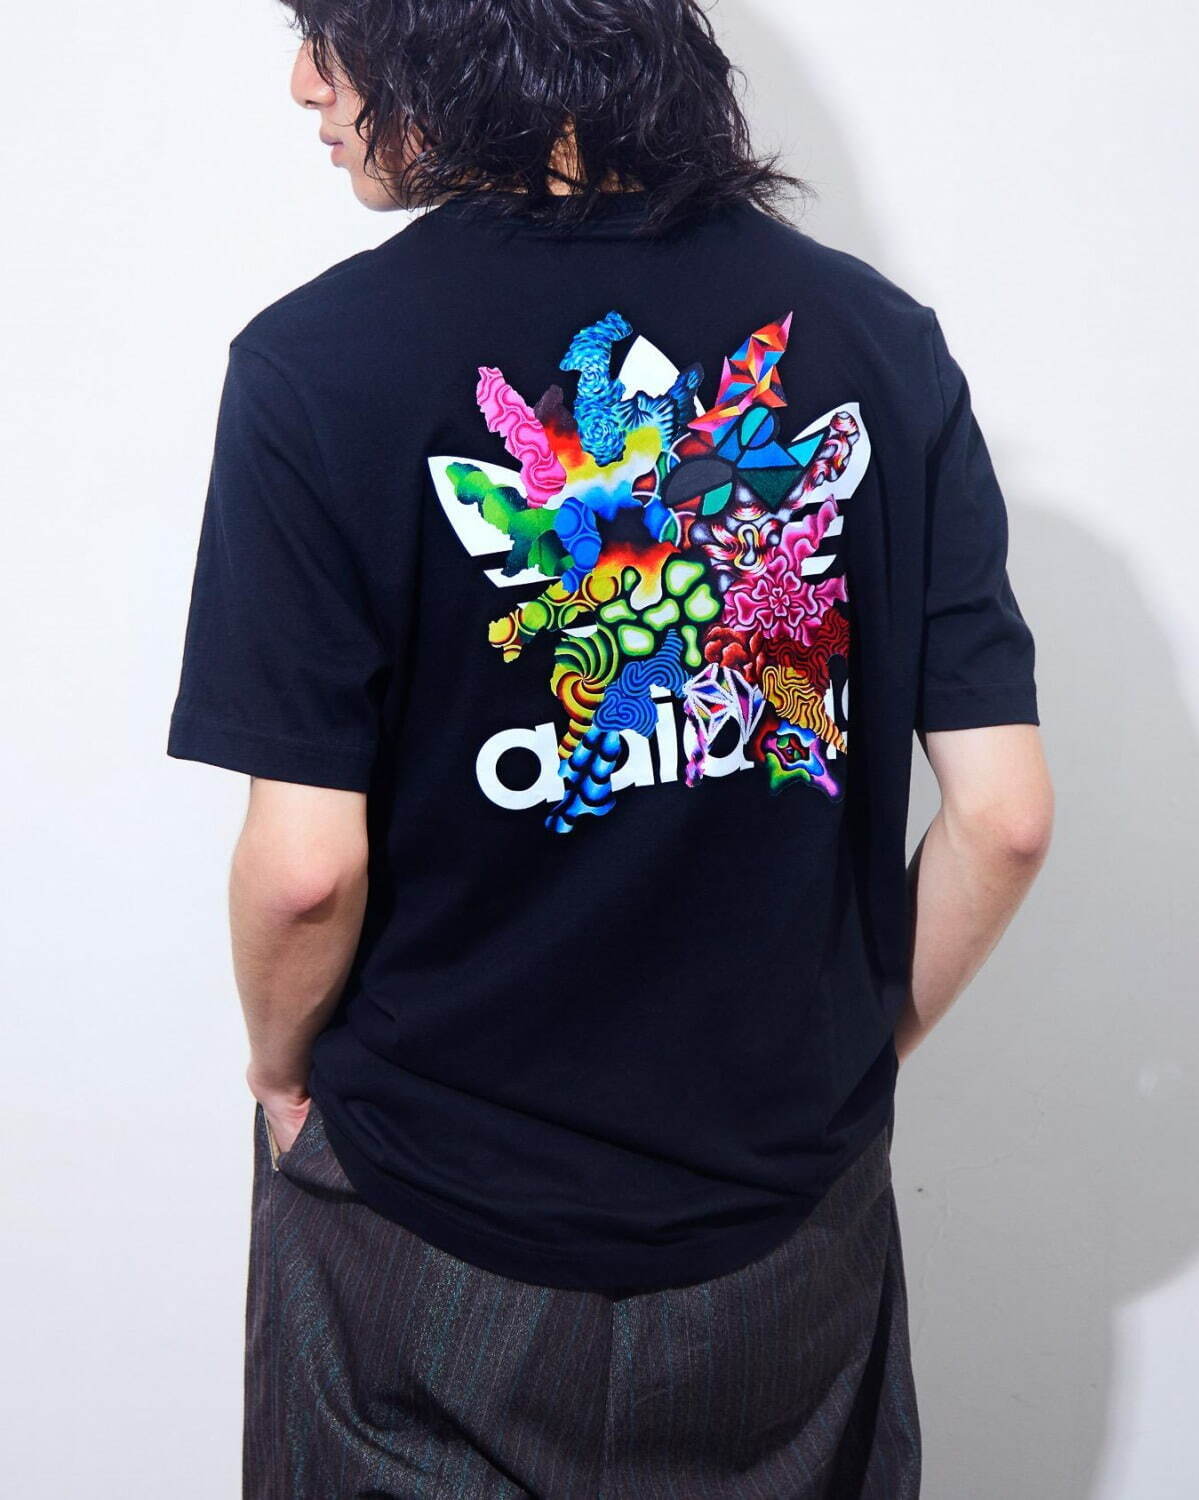 アディダス オリジナルス 鈴木一世 鮮やかな 三つ葉ロゴアート 配した限定tシャツ スウェット ファッションプレス